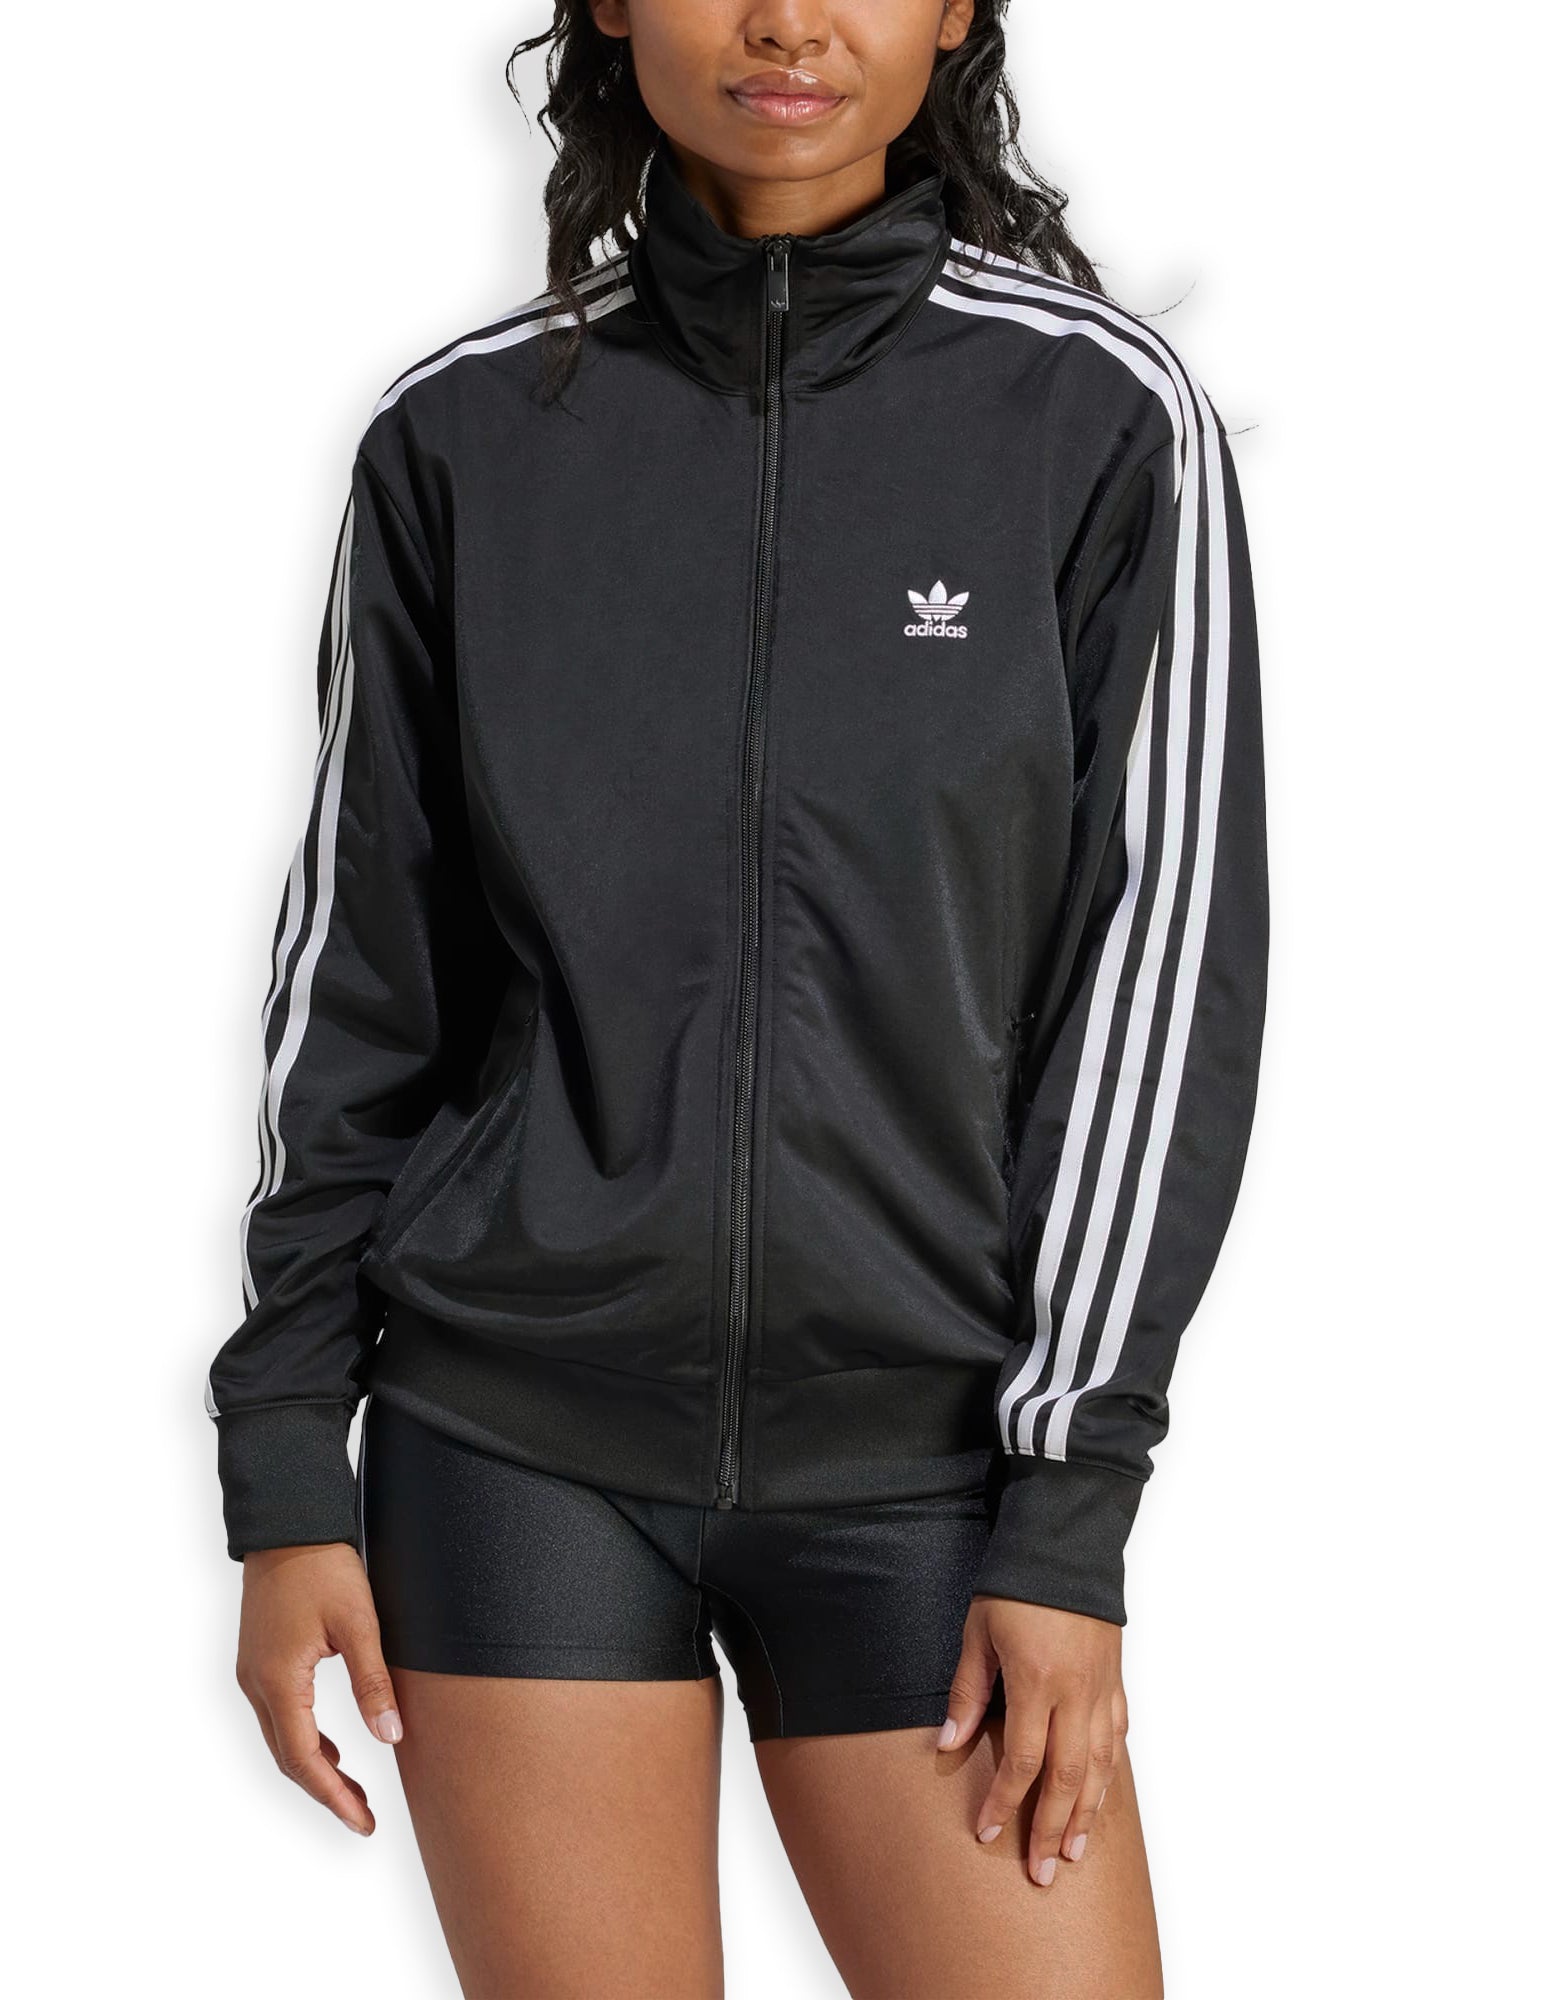 Adidas Firebird Tt Black Women's Zip Sweatshirt